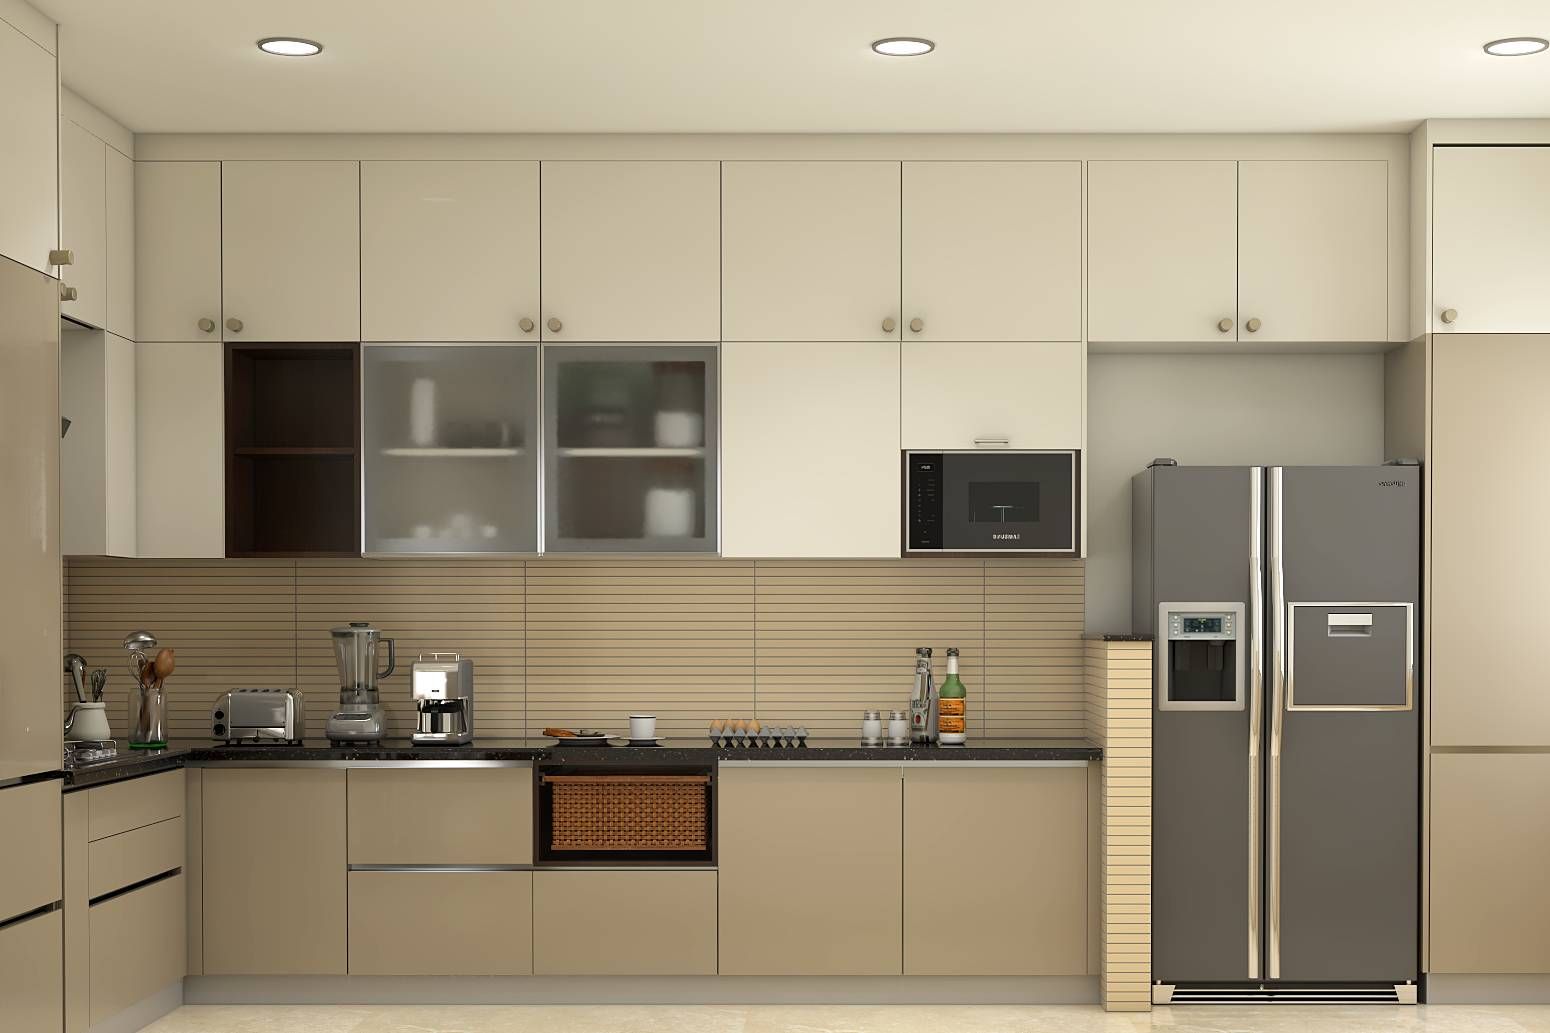 All-Beige Contemporary Modular Kitchen Design Ideas